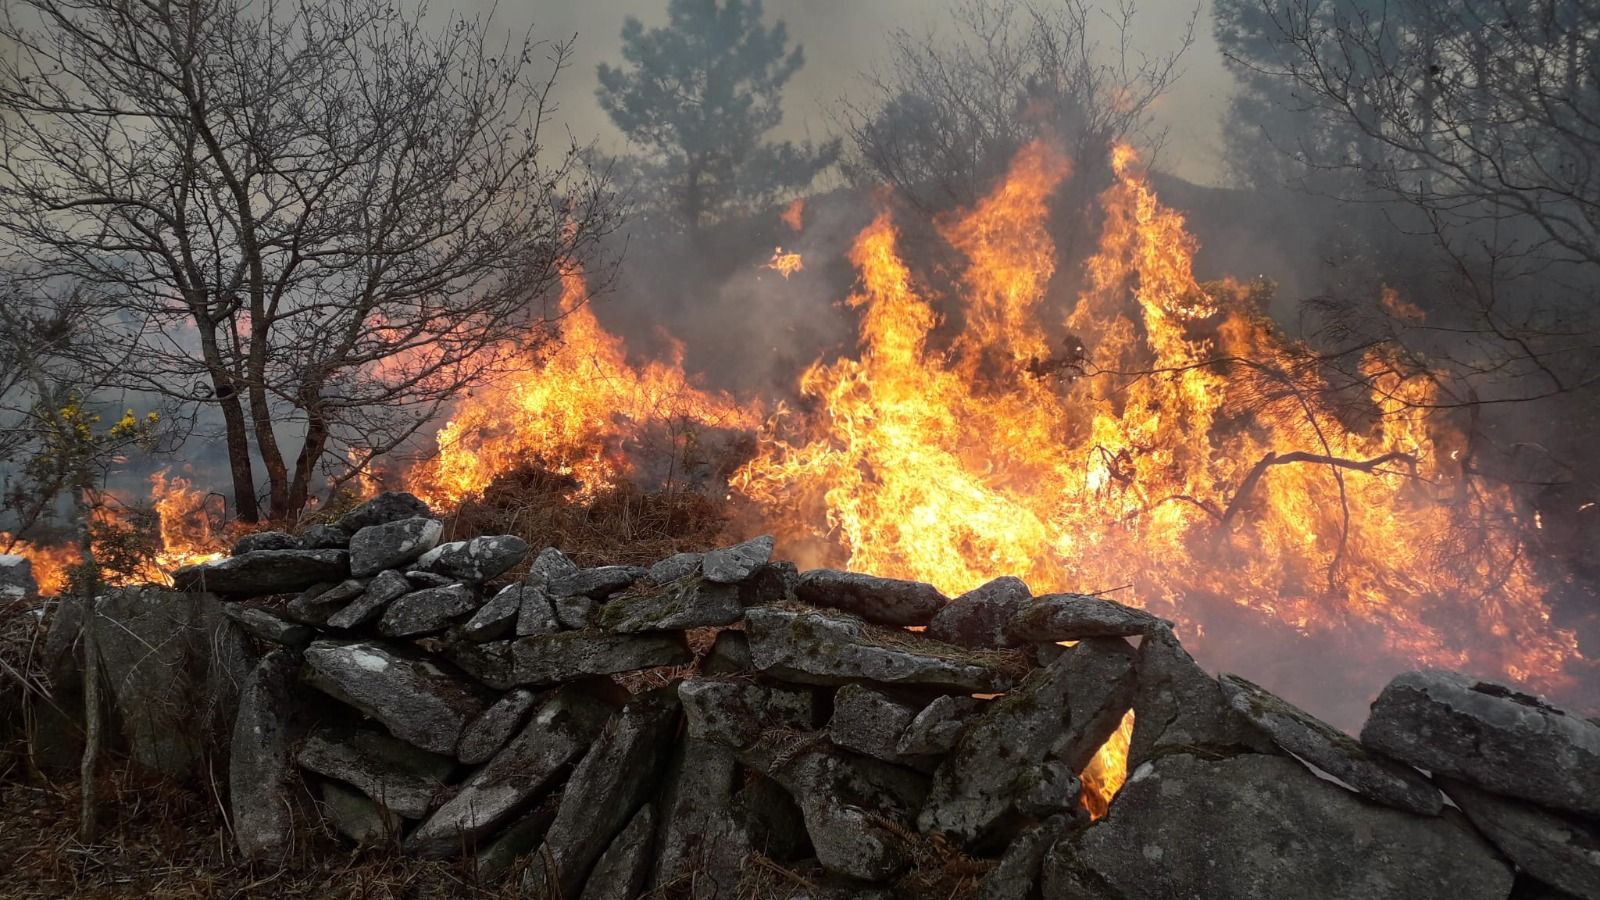 El fuego quemó 20 hectáreas de monte